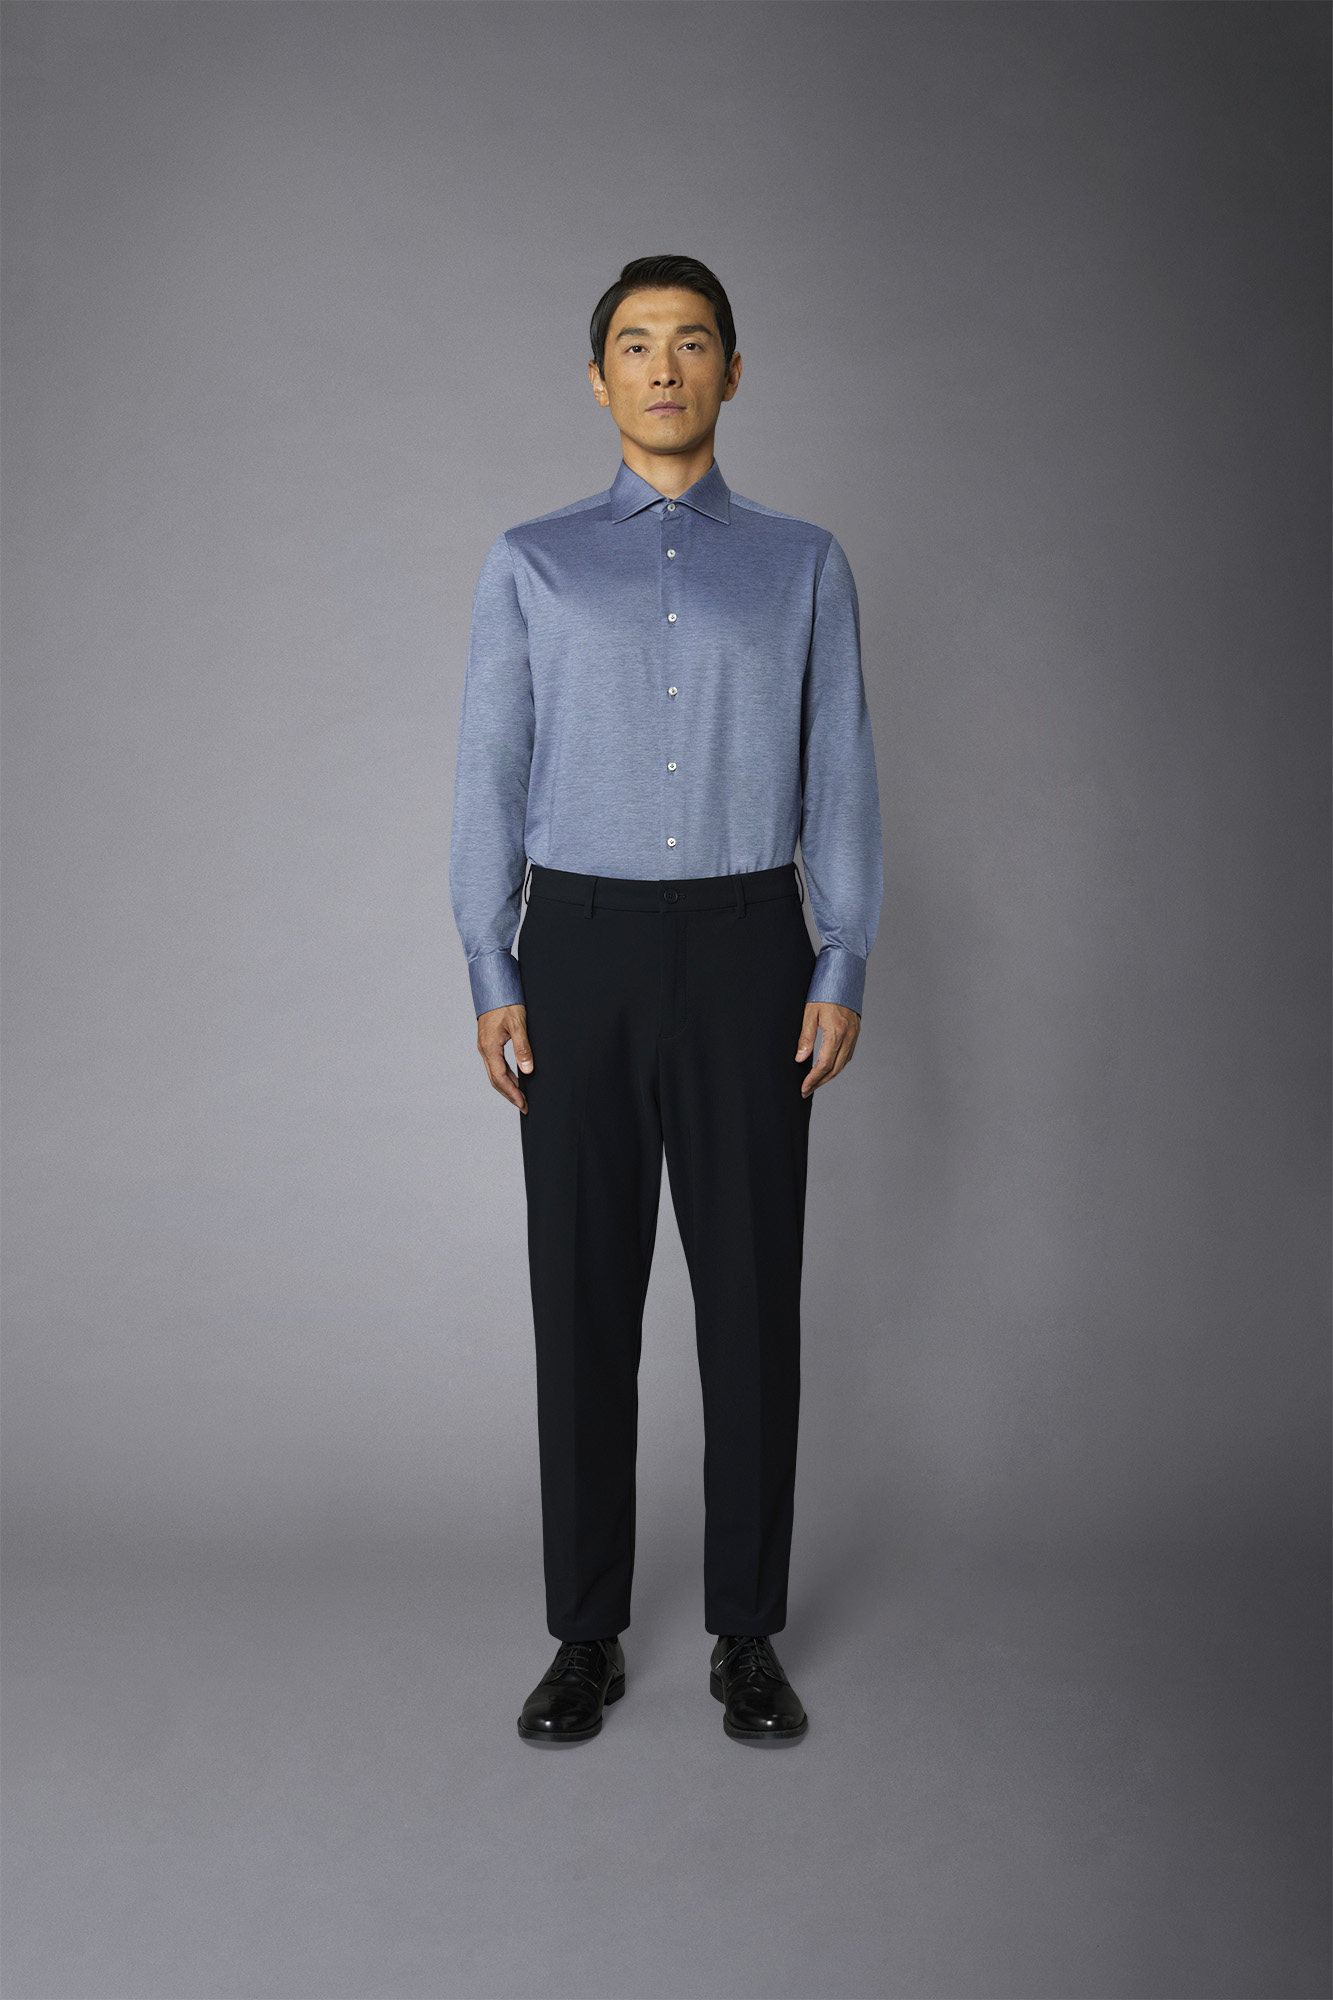 Pantalone chino uomo tessuto in nylon elasticizzato comfort fit image number null